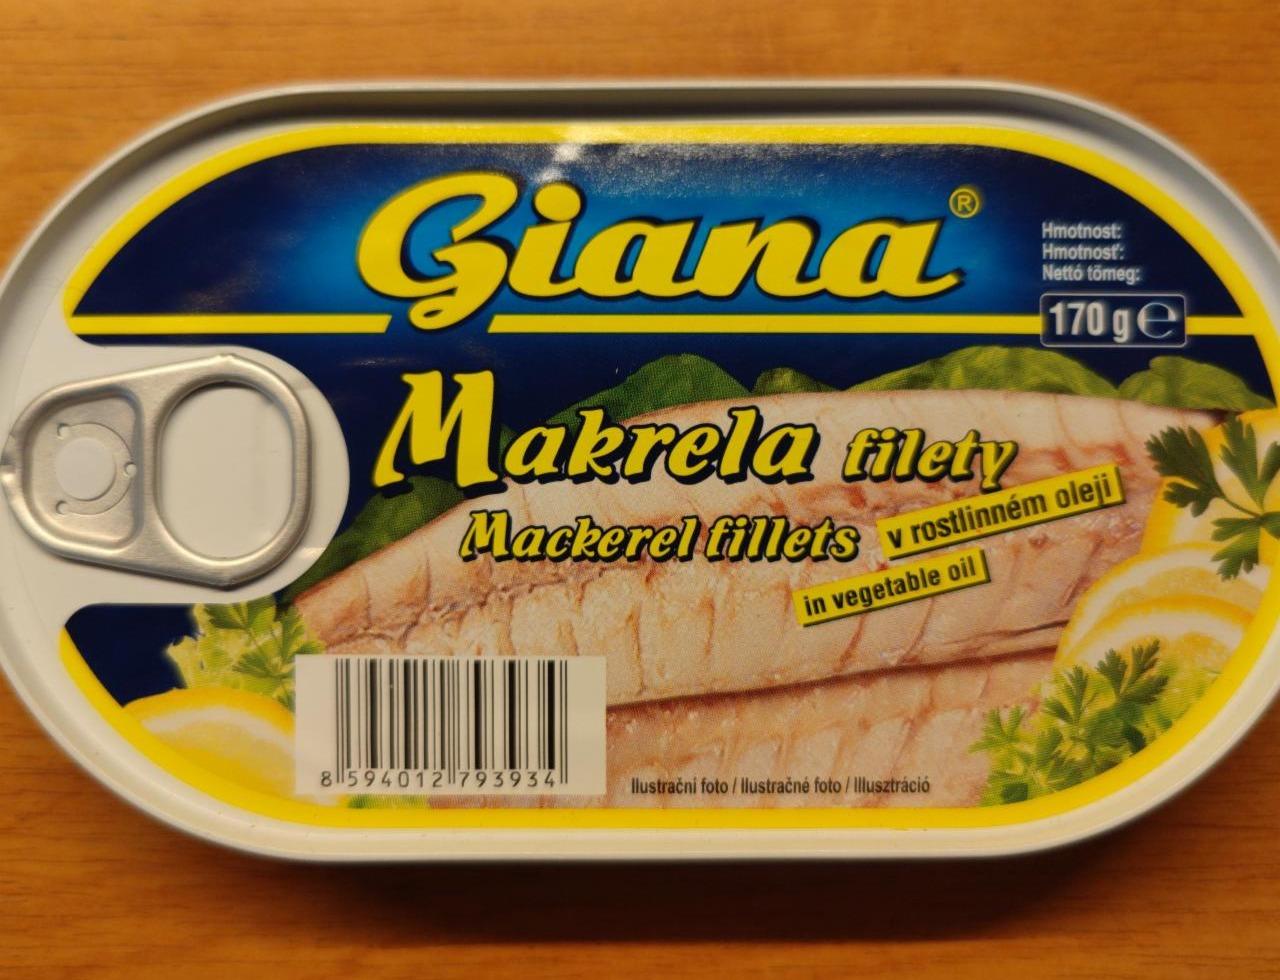 Fotografie - Makrela filety v rostlinném oleji Giana